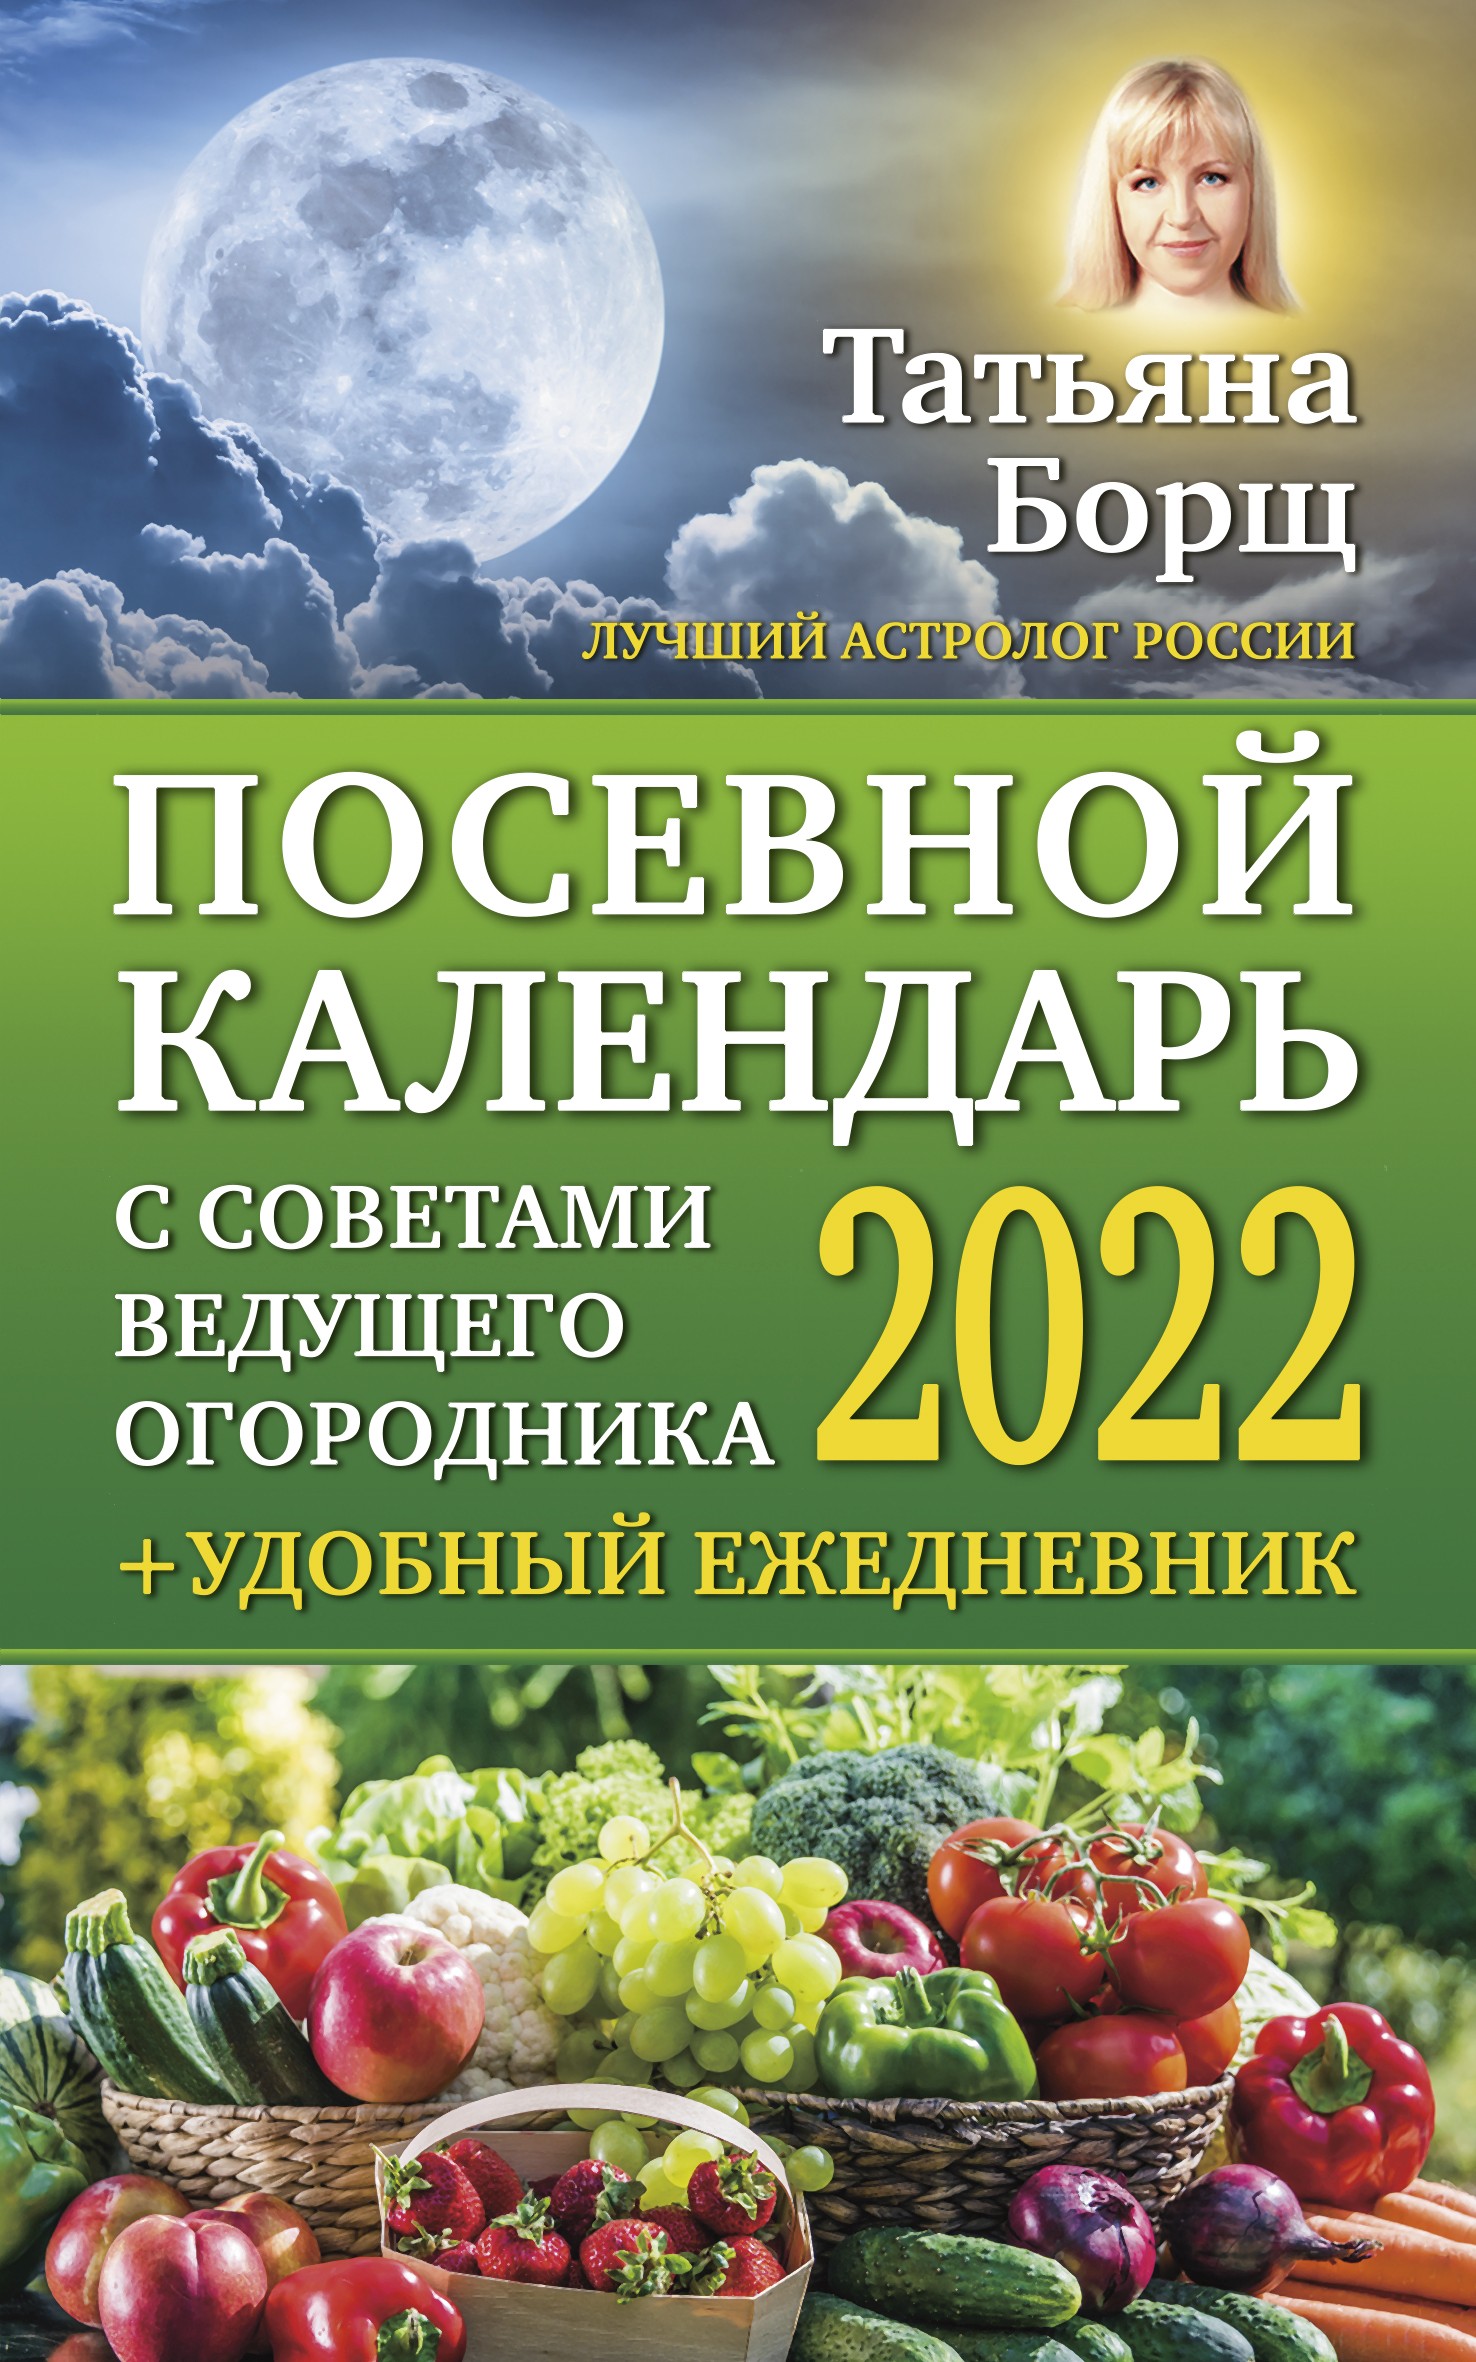 Посевной календарь на 2022 год с советами ведущего огородника + удобный ежедневник